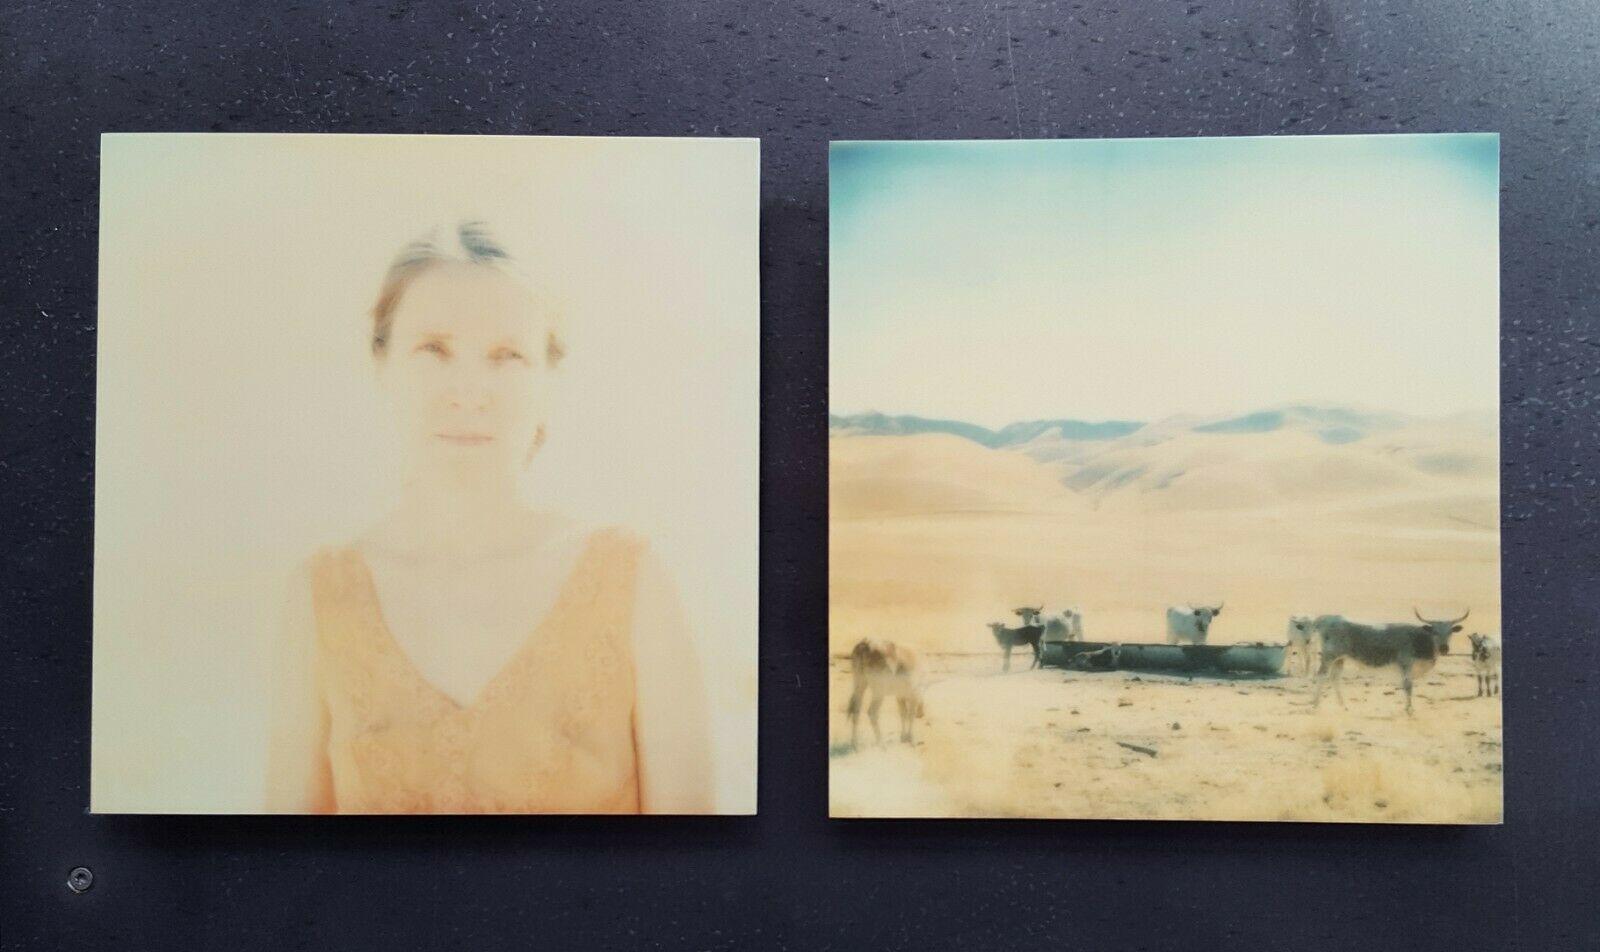 Huilefields, diptyque - 21e siècle, Polaroid, contemporain, portrait, paysage - Orange Landscape Photograph par Stefanie Schneider